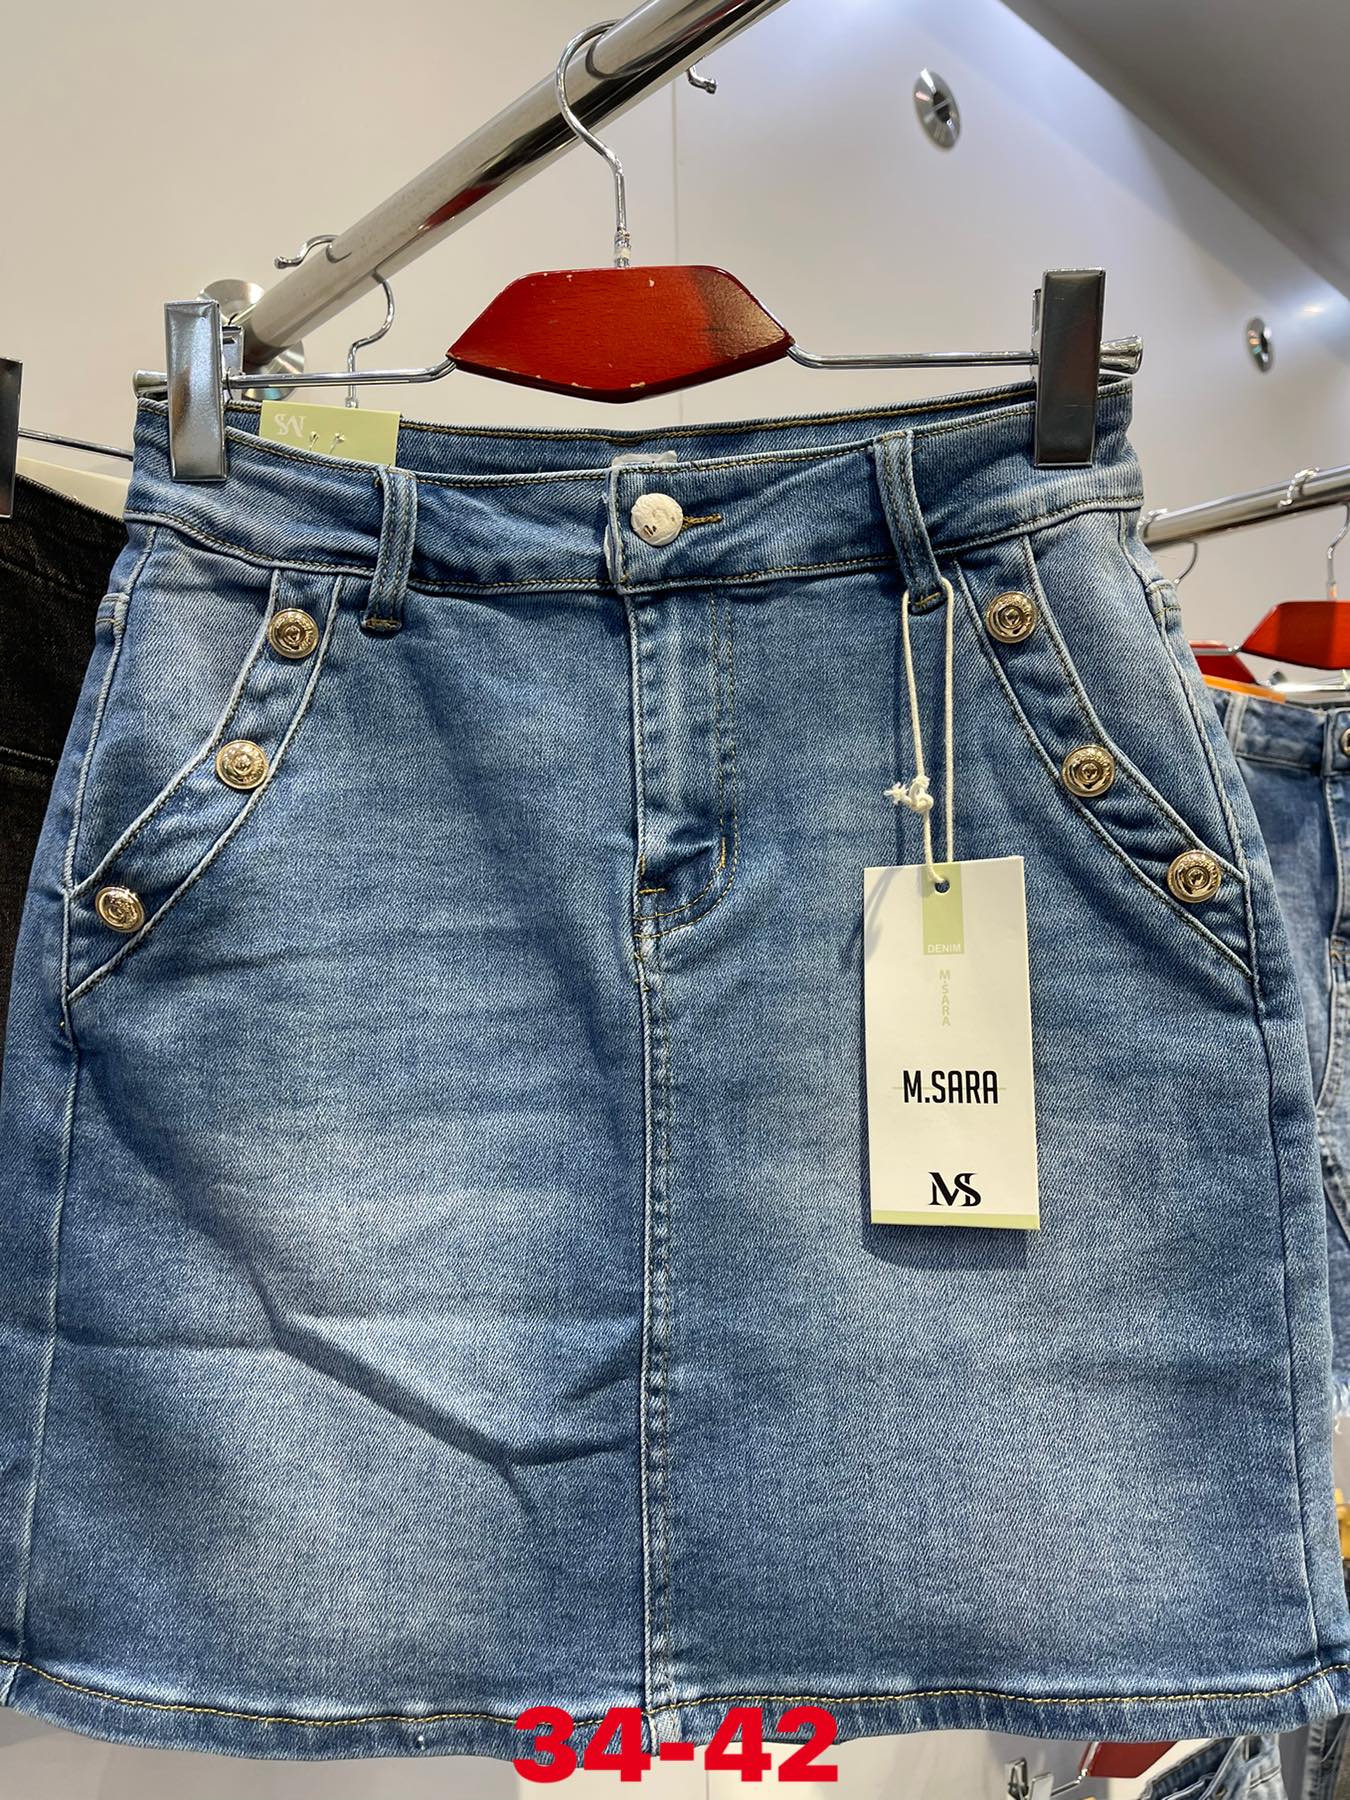 Spódnica damskie jeans Roz  34-42.  1 kolor . Paczka 10szt